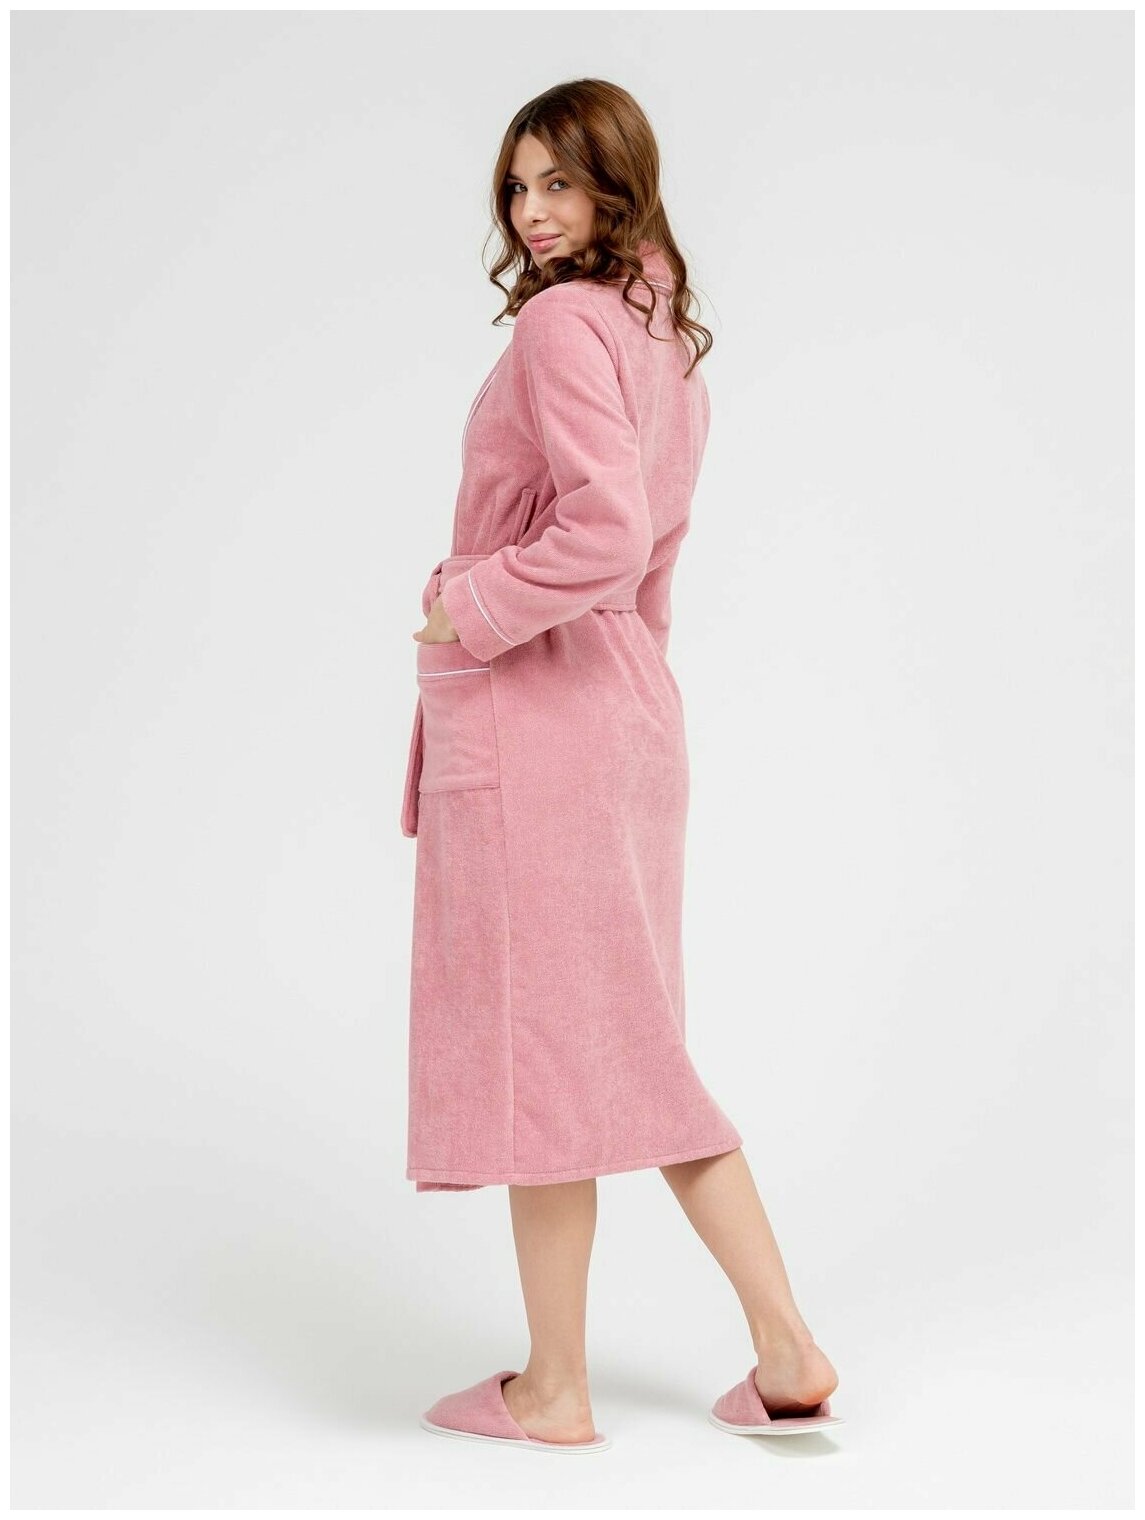 Женский махровый халат с кантом Росхалат, пудрово-розовый. Размер 50-52 - фотография № 9